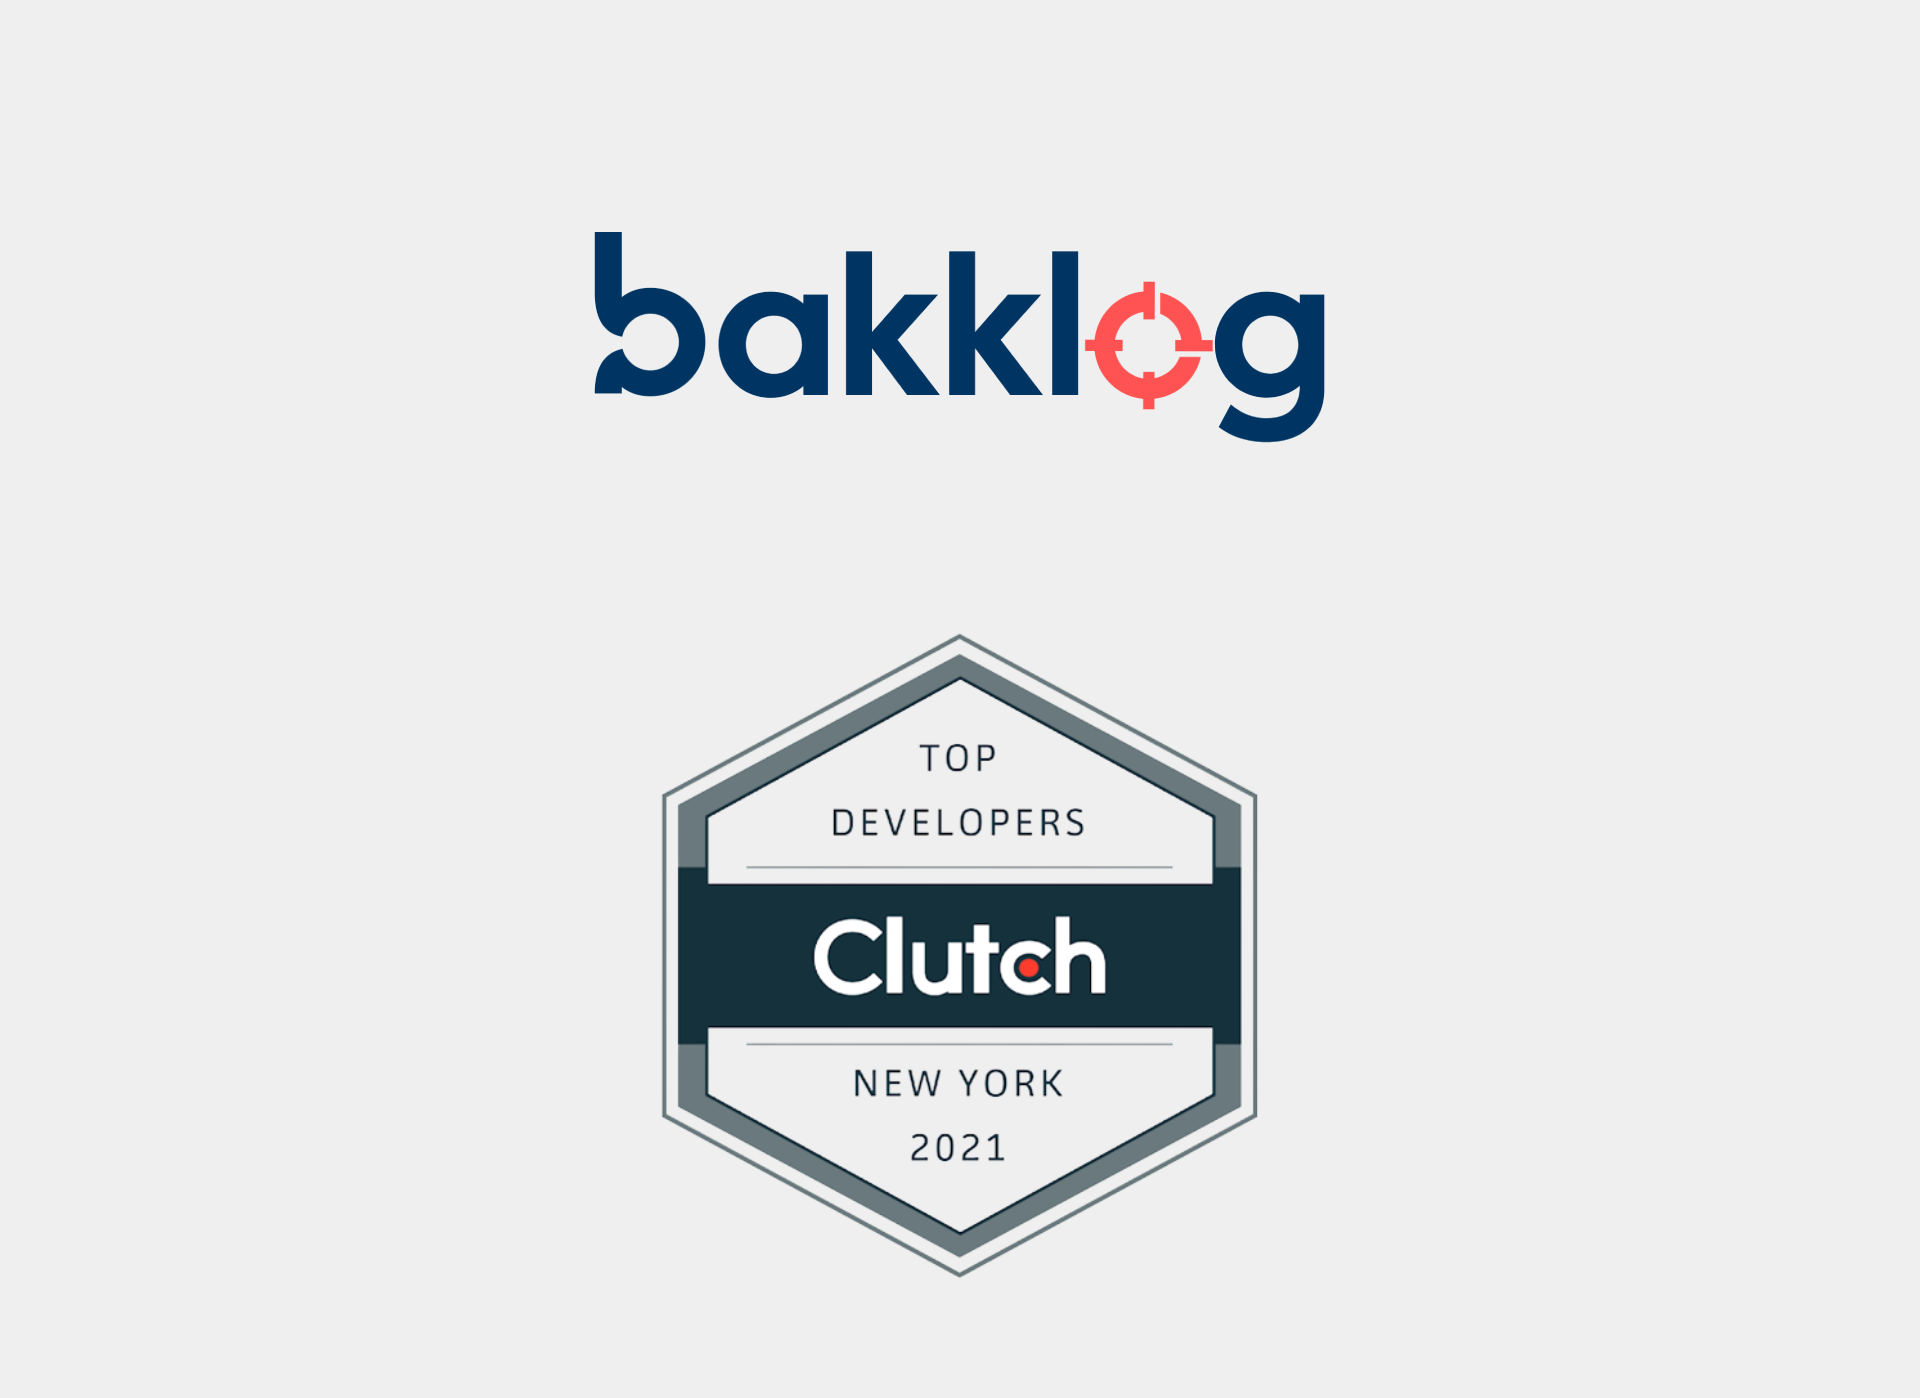 Bakklog named top developer in New York 2021